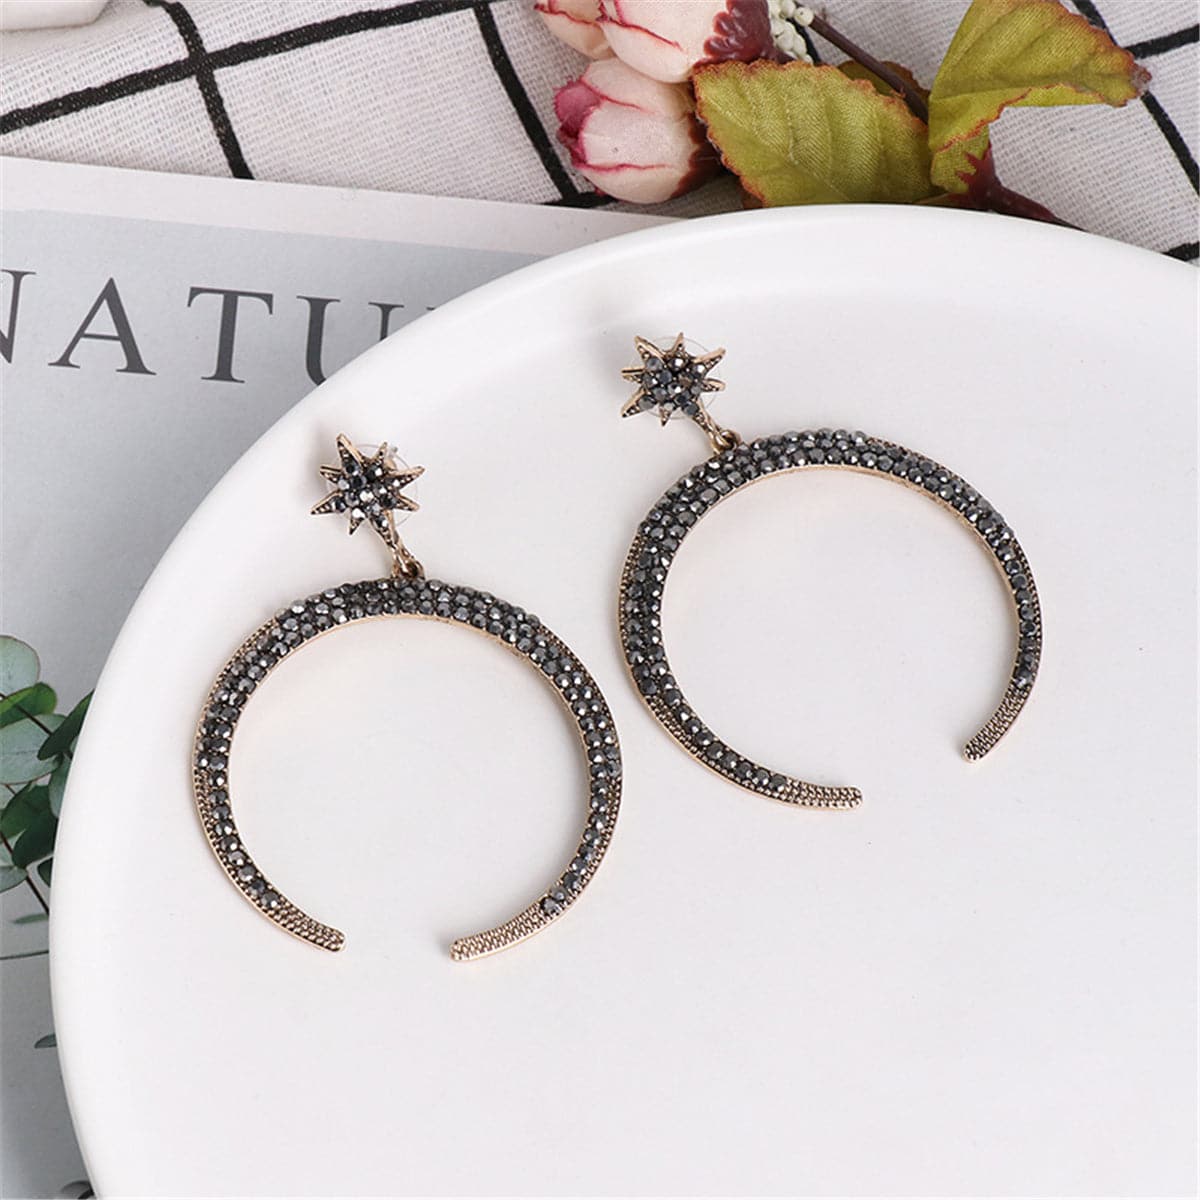 Black Cubic Zirconia Star & Moon Drop Earrings